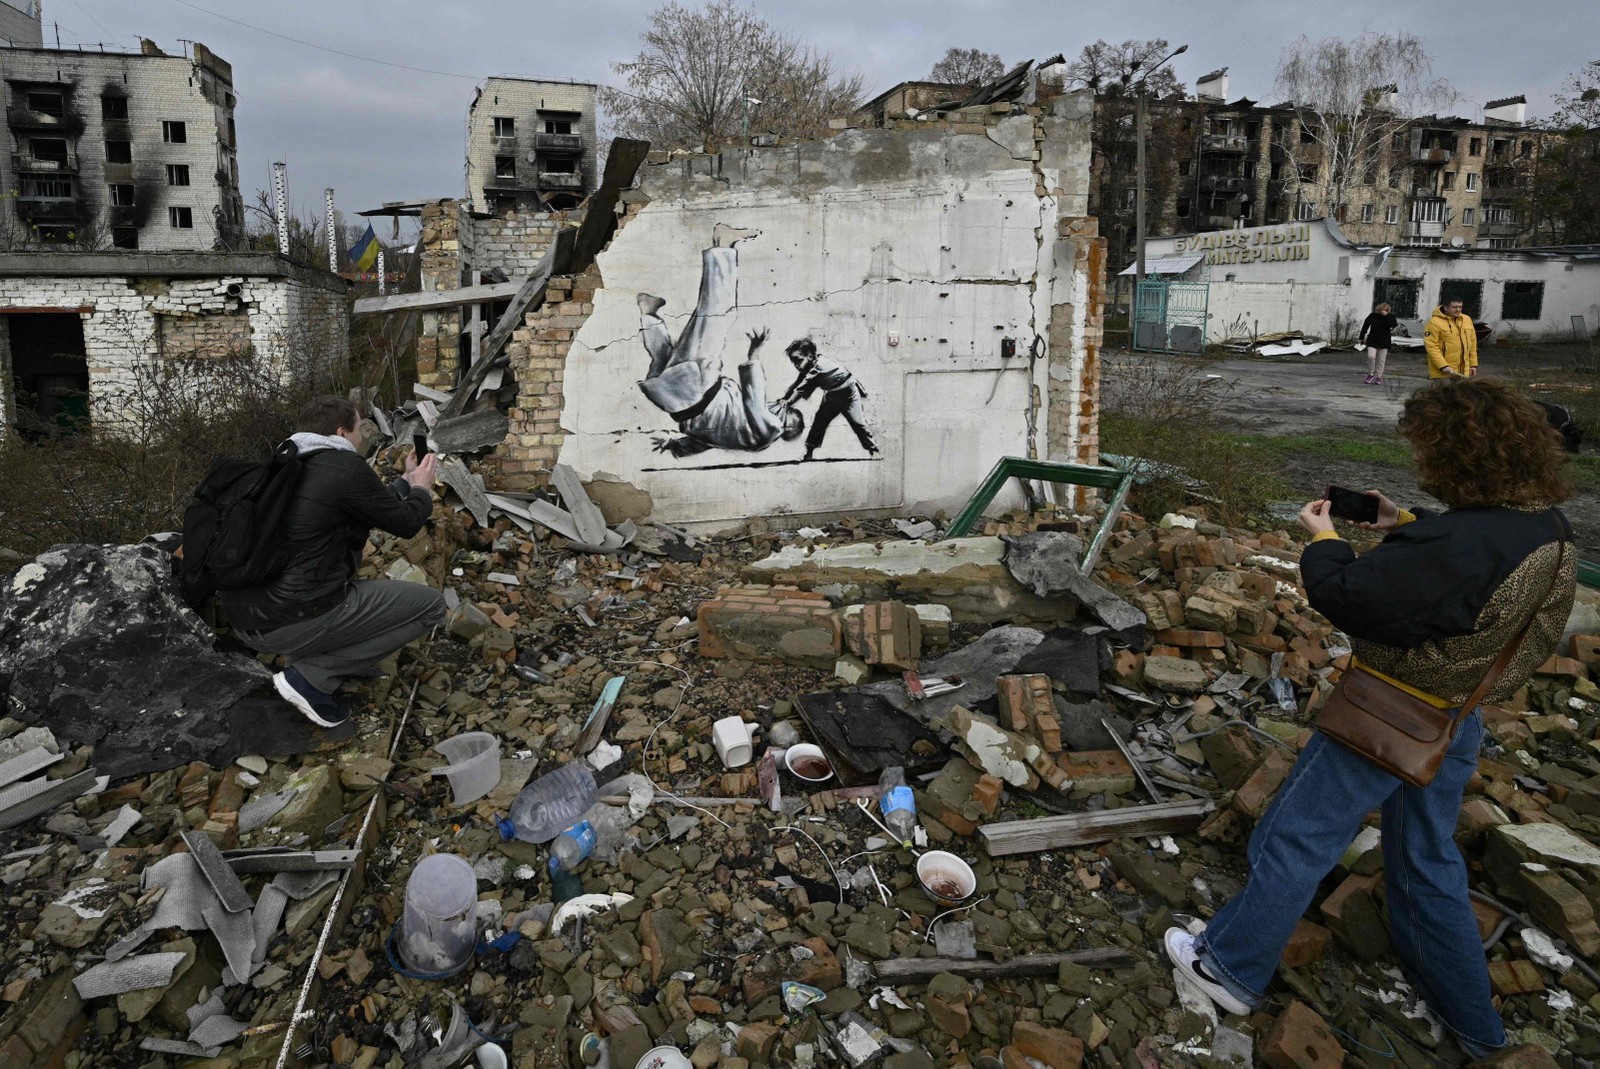 Ucranianos tiram foto de grafite 'estilo Banksy' que retrata uma criança derrubando um adulto com golpe de judô — Foto: Genya SAVILOV / AFP